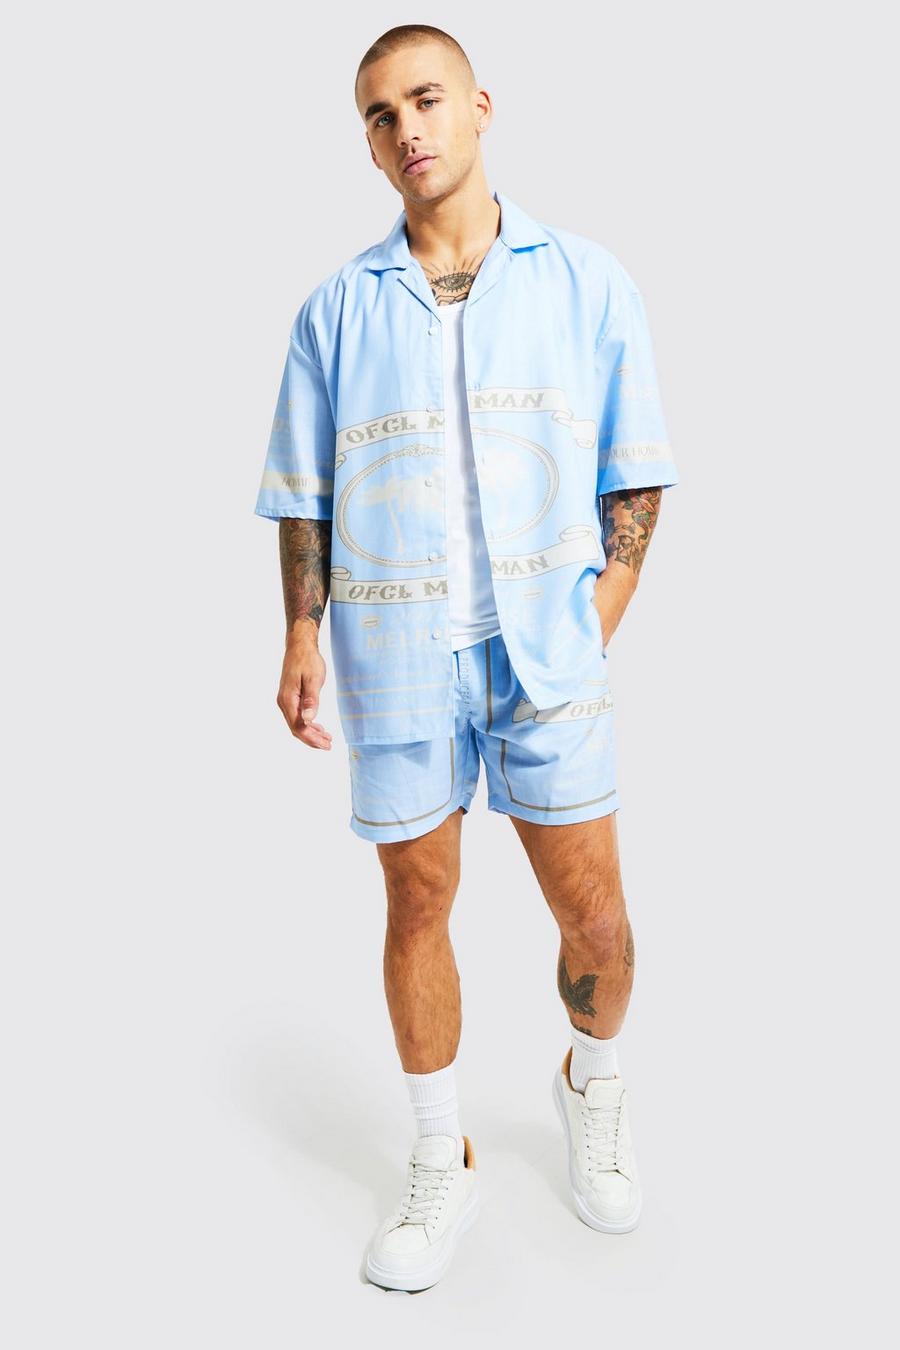 Conjunto de pantalón corto y camisa recta con estampado gráfico MAN Official, Blue azul